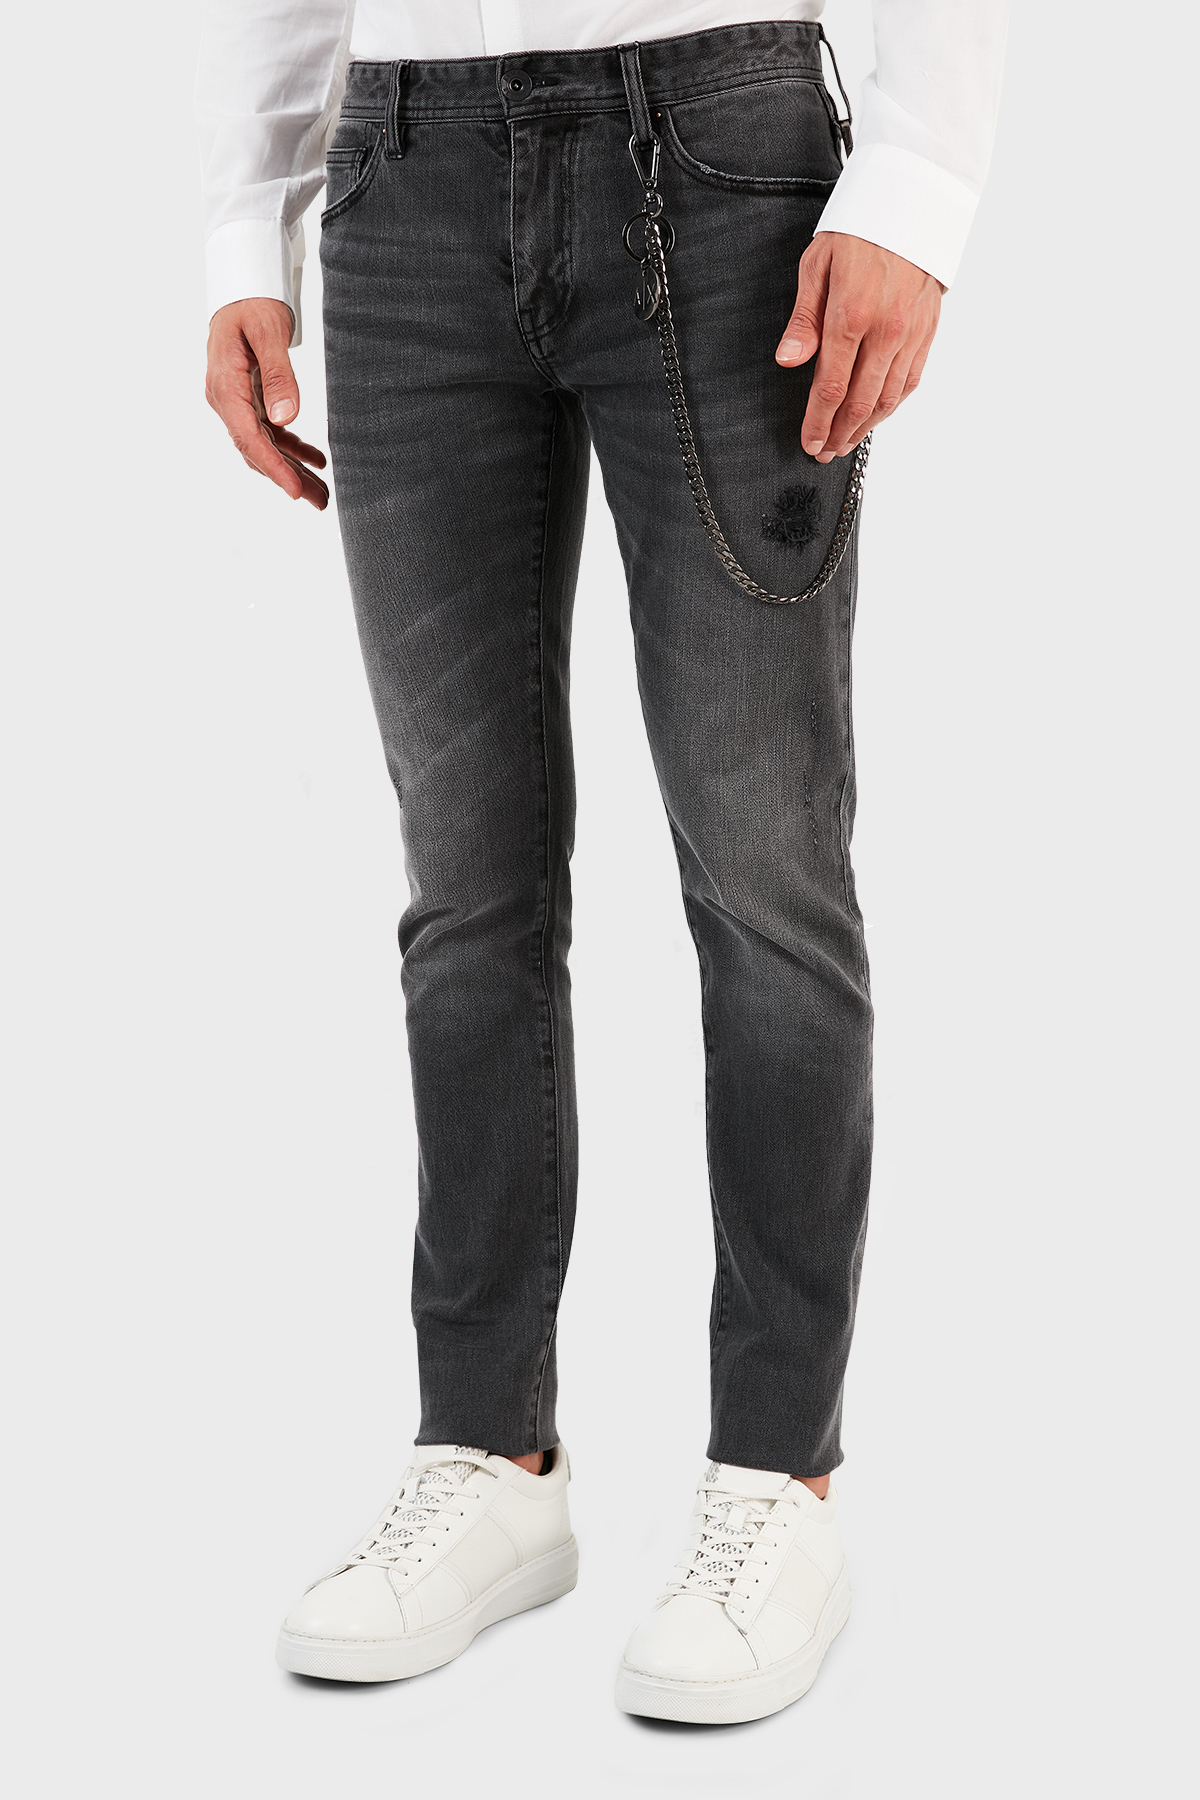 Armani Exchange Pamuklu Skinny Fit J14 Jeans Erkek Kot Pantolon 6KZJ14 Z3N3Z 0903 GRİ